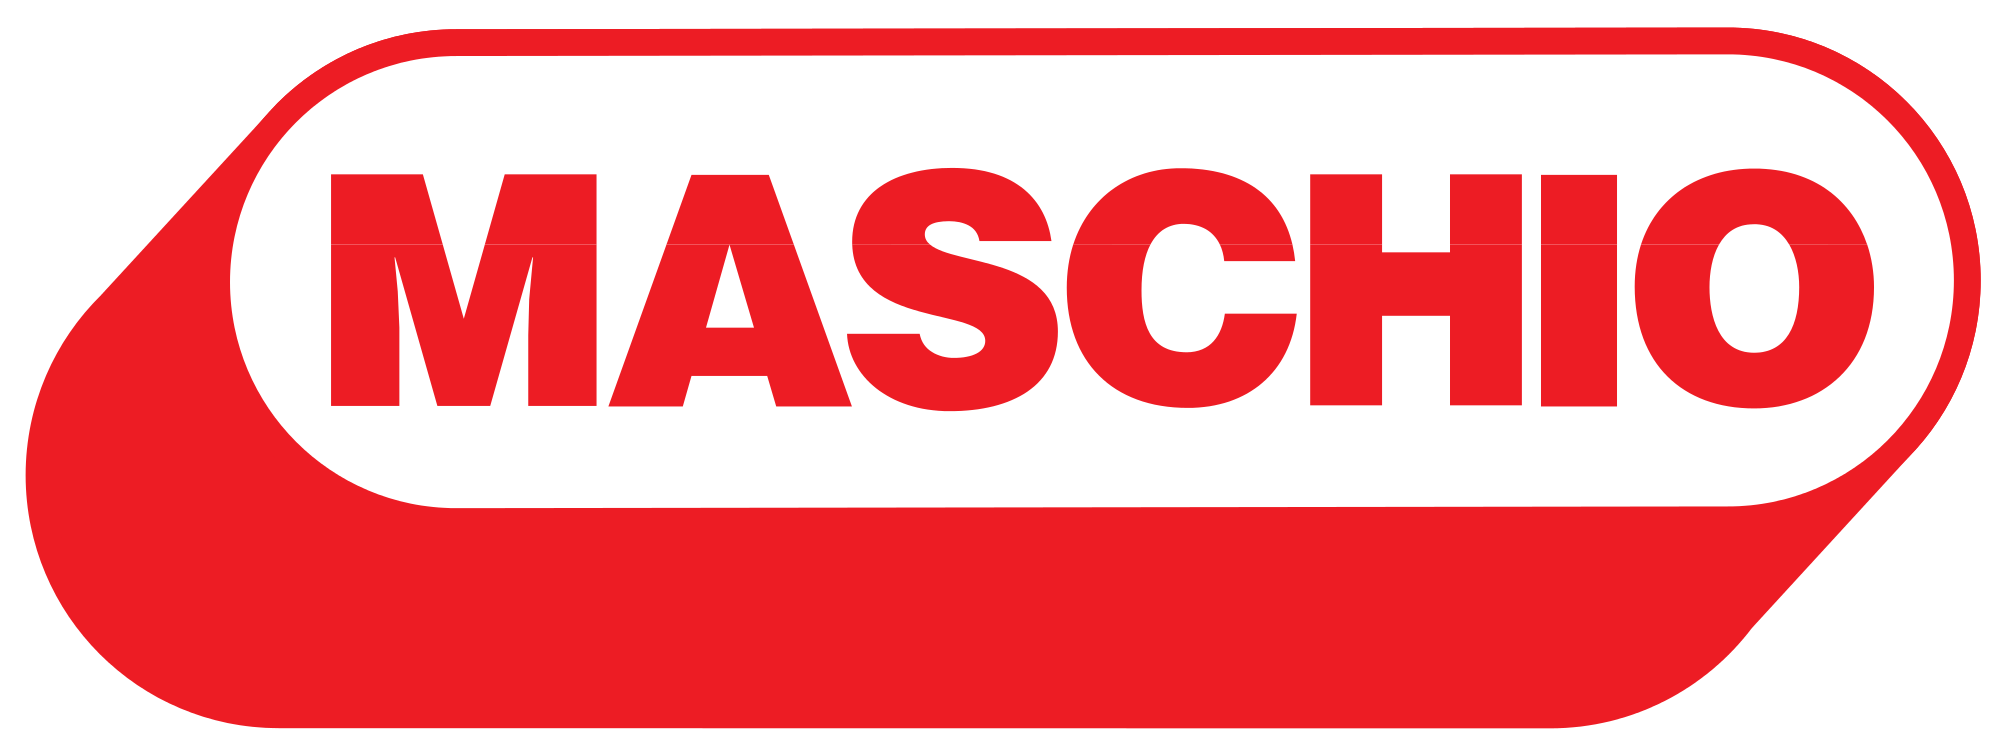 Maschio Gaspardo Logo photo - 1